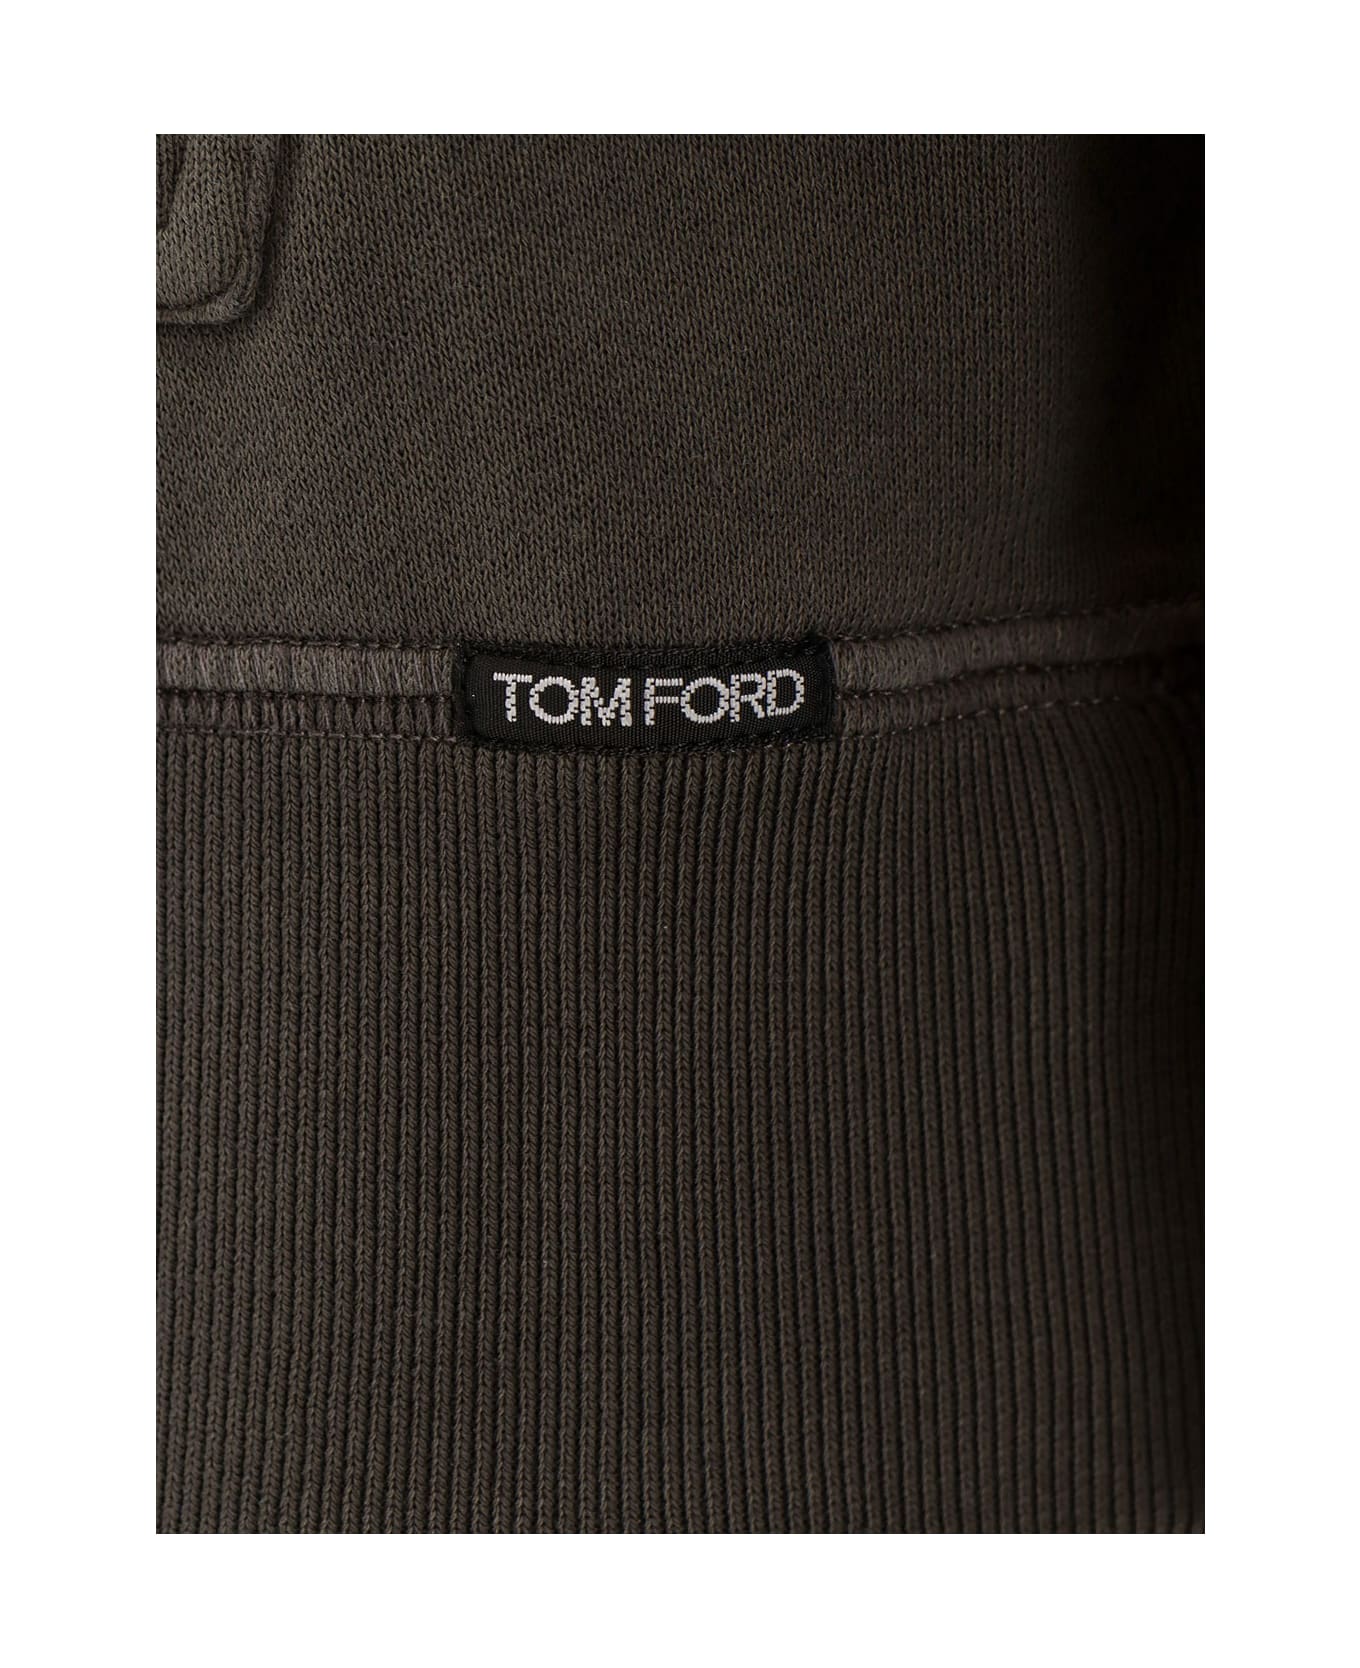 Tom Ford Sweatshirt - Grey フリース